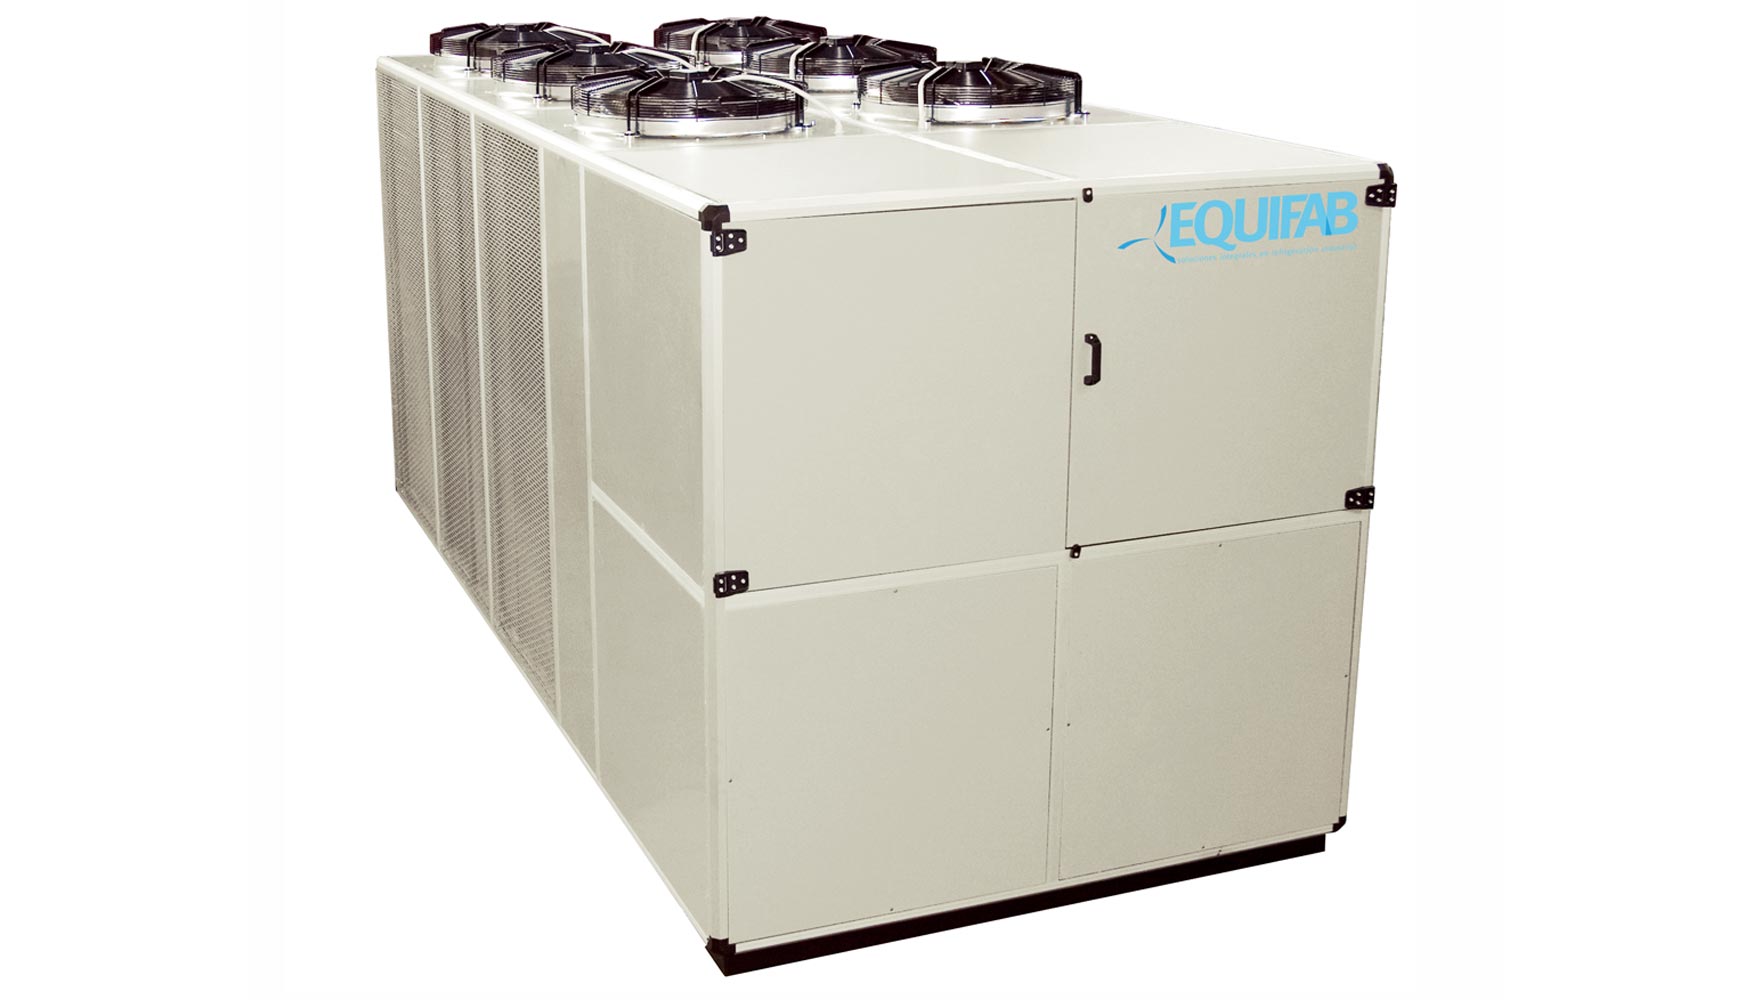 Compresores de tornillo con tecnologa Inverter: garantizan el ahorro y reduce las emisiones de CO2